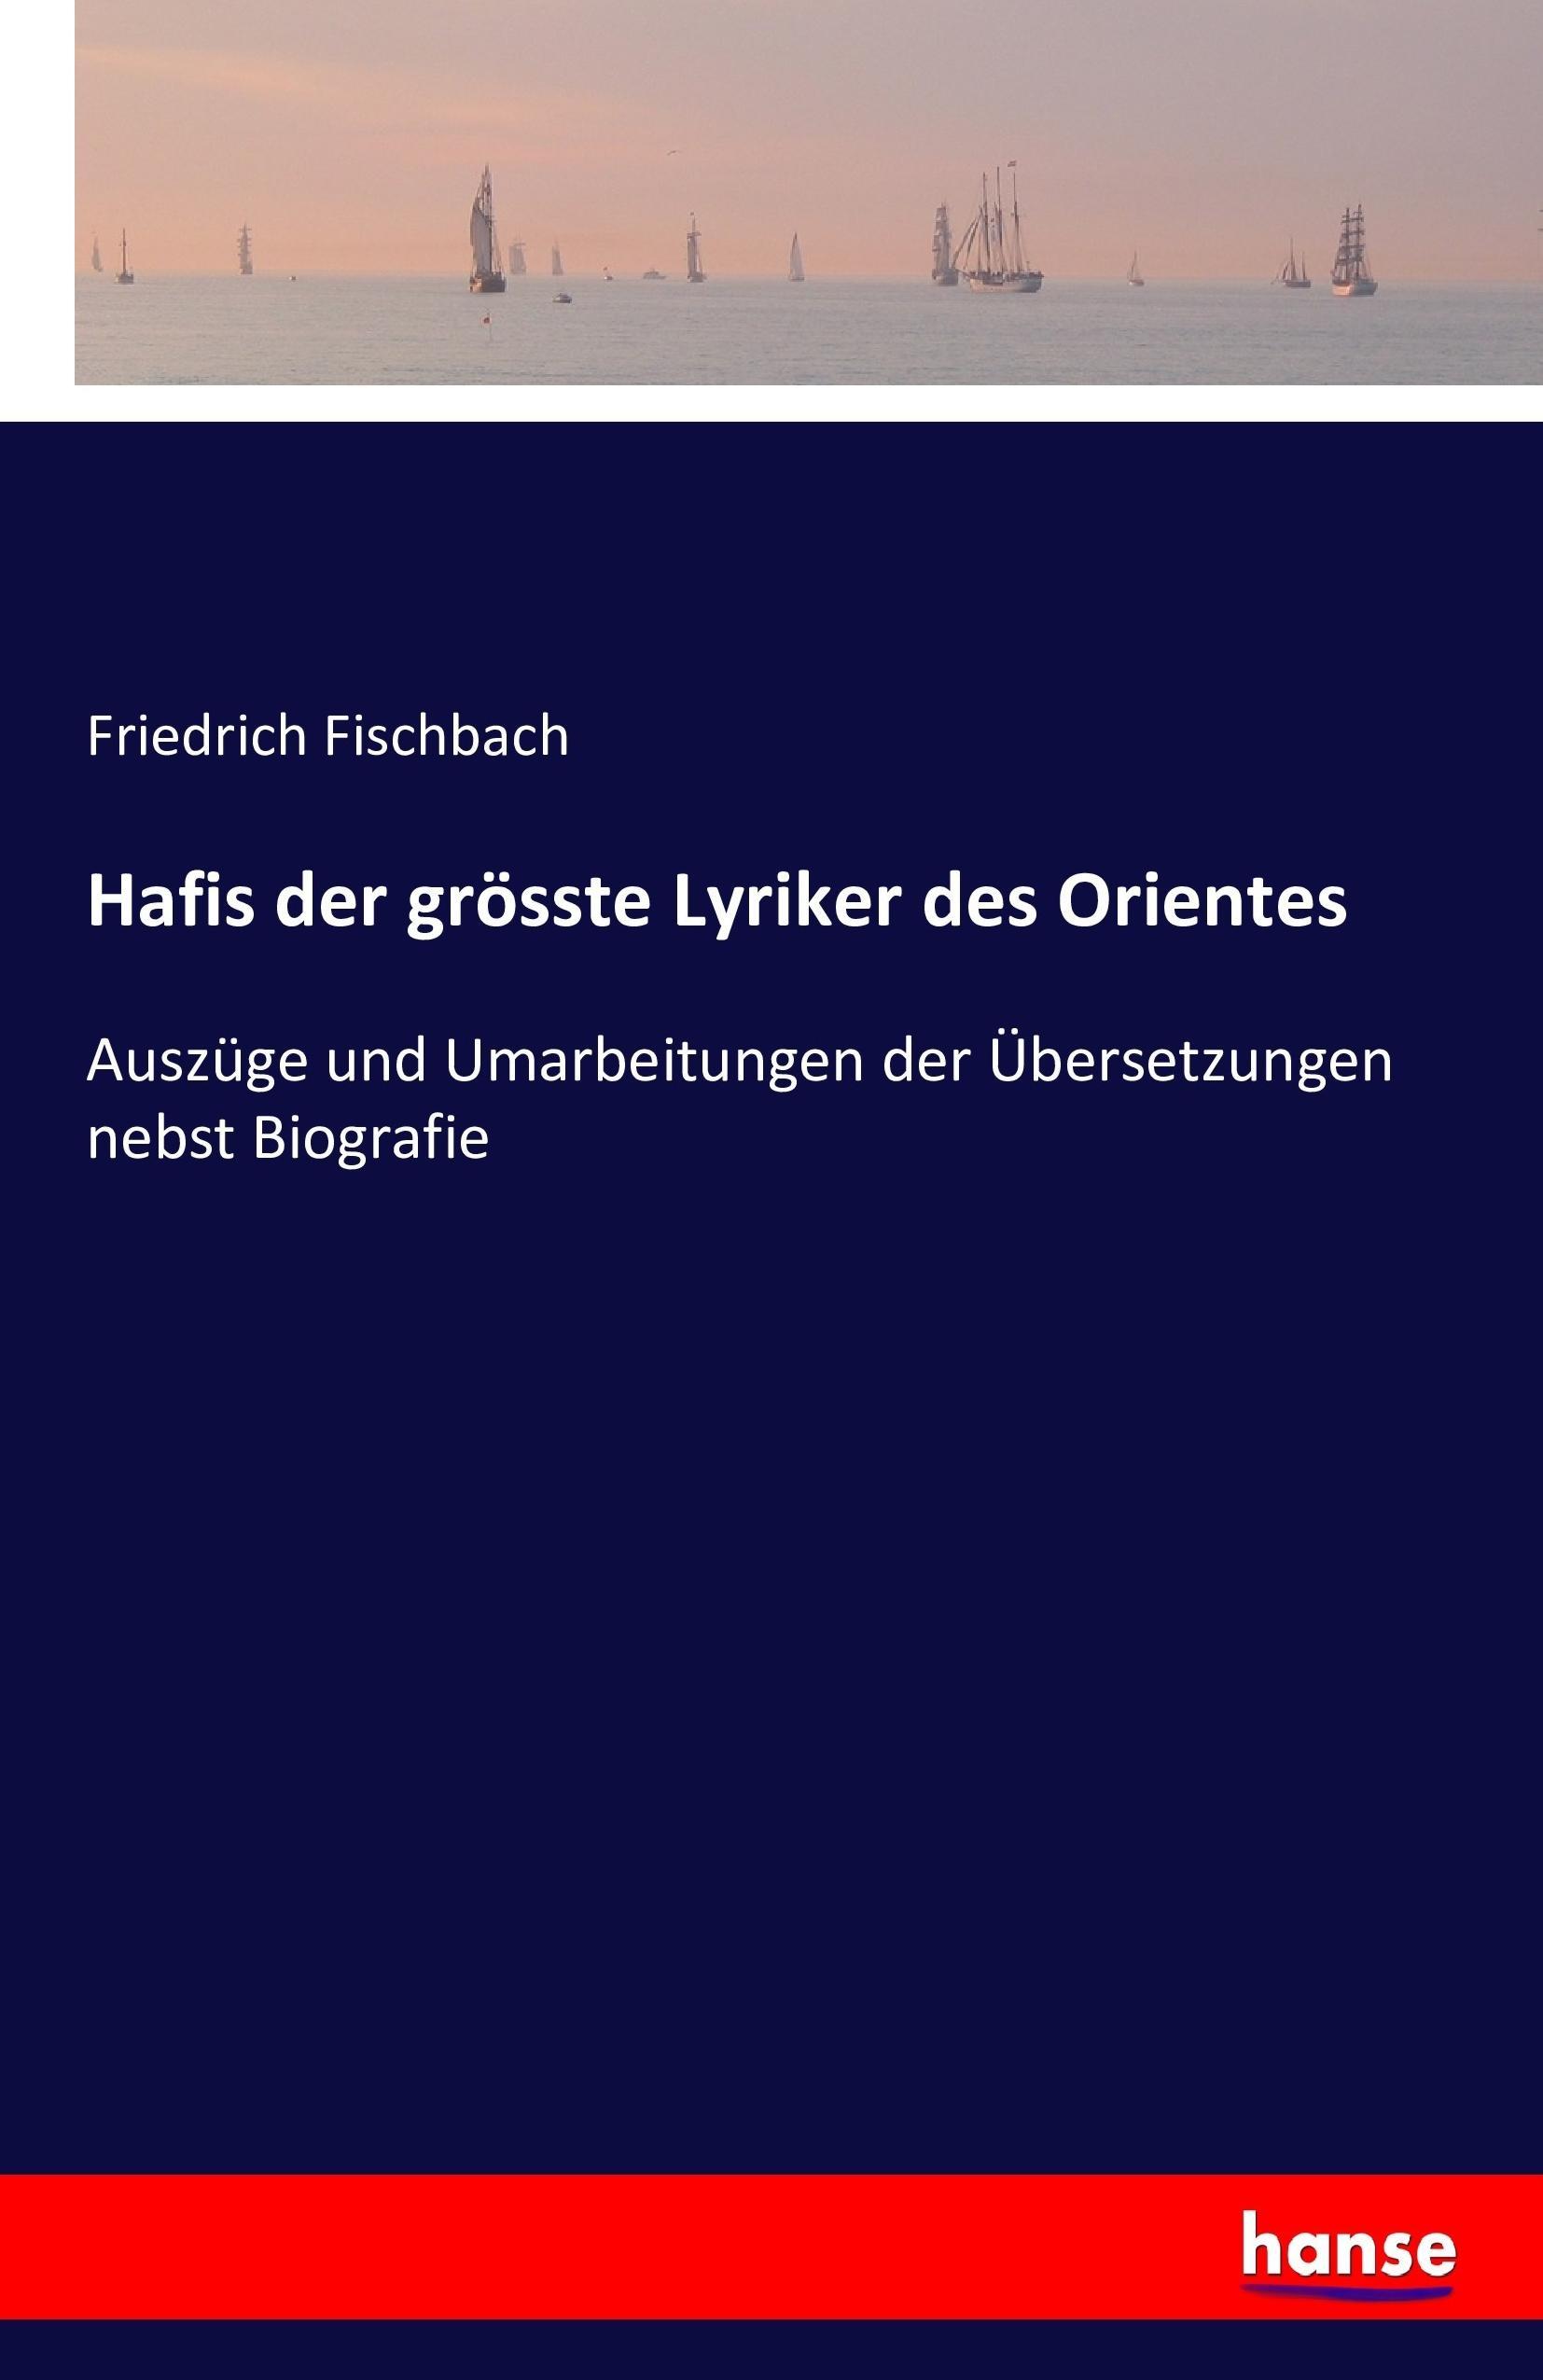 Hafis der groesste Lyriker des Orientes - Fischbach, Friedrich